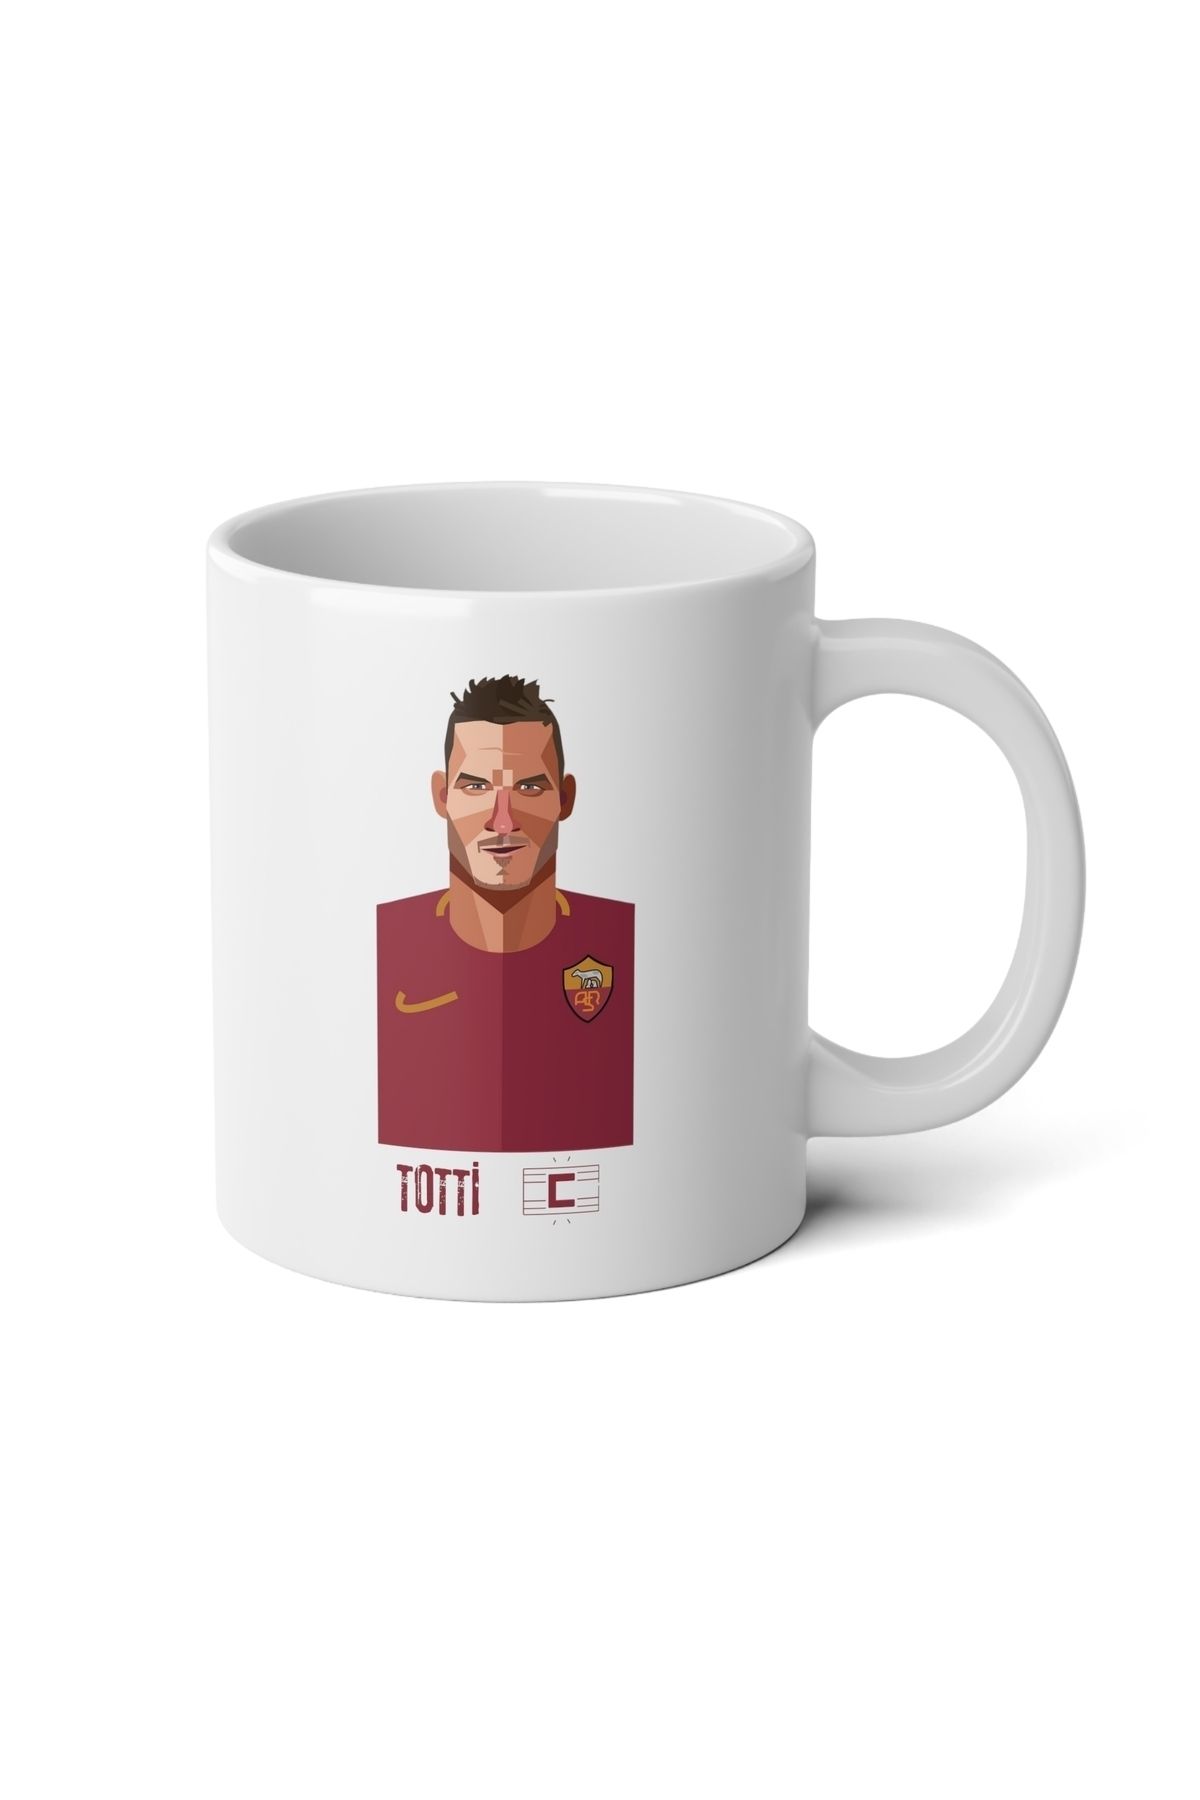 IVART Totti-futbol Özel Tasarım Baskılı Premium Porselen Kupa Bardak